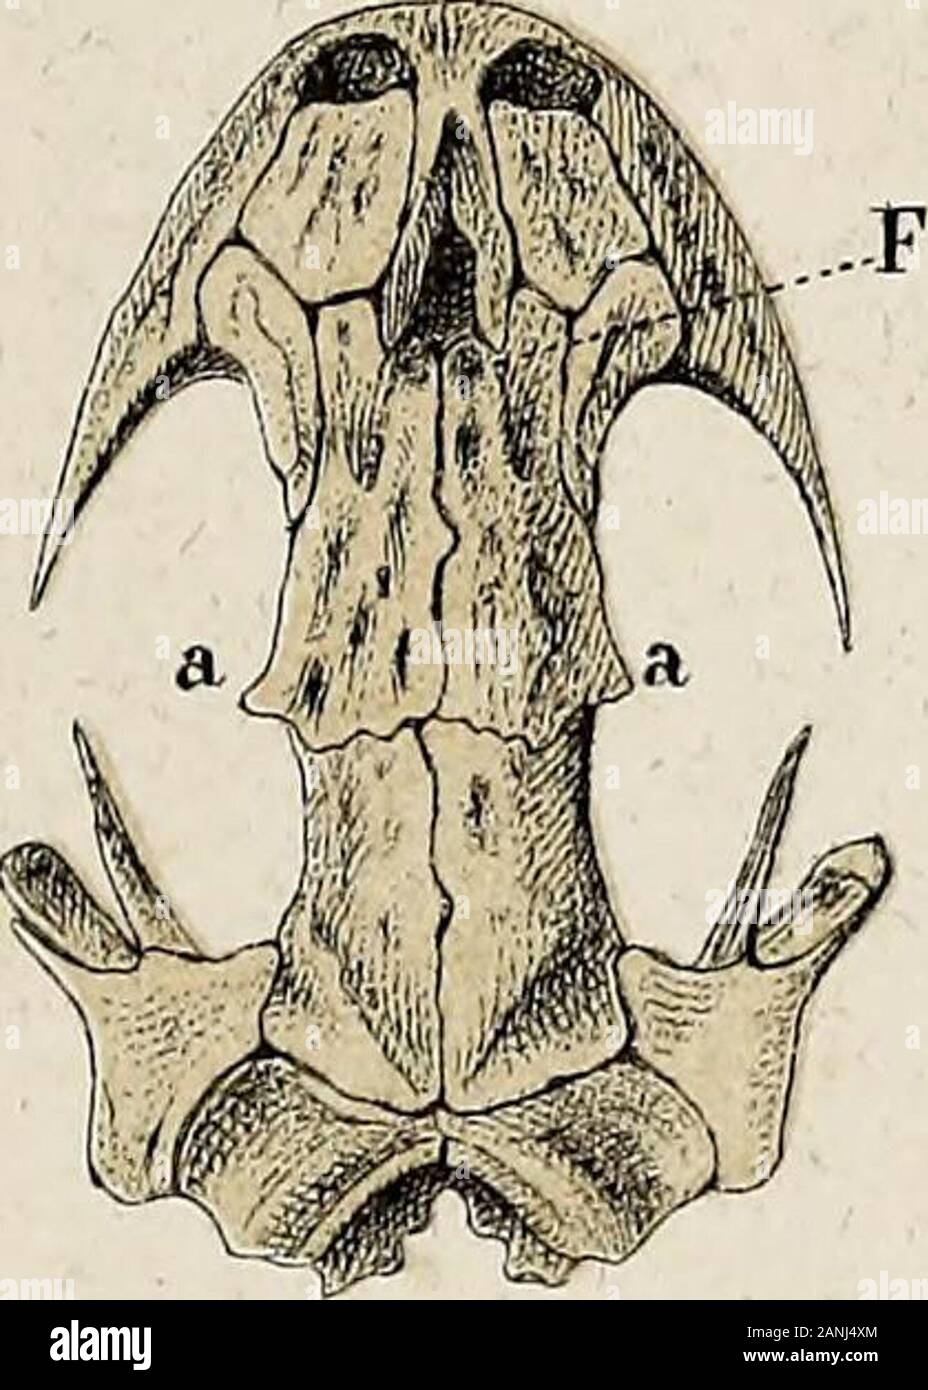 Salamandrina perspicillata und Geotriton fuscus : Versuch einer der Anatomie vergleichenden Salamandrinen, mit Besonderer berücksichtigung der Skelet-Verhaeltnisse . 85. 88 Oe Foto de stock